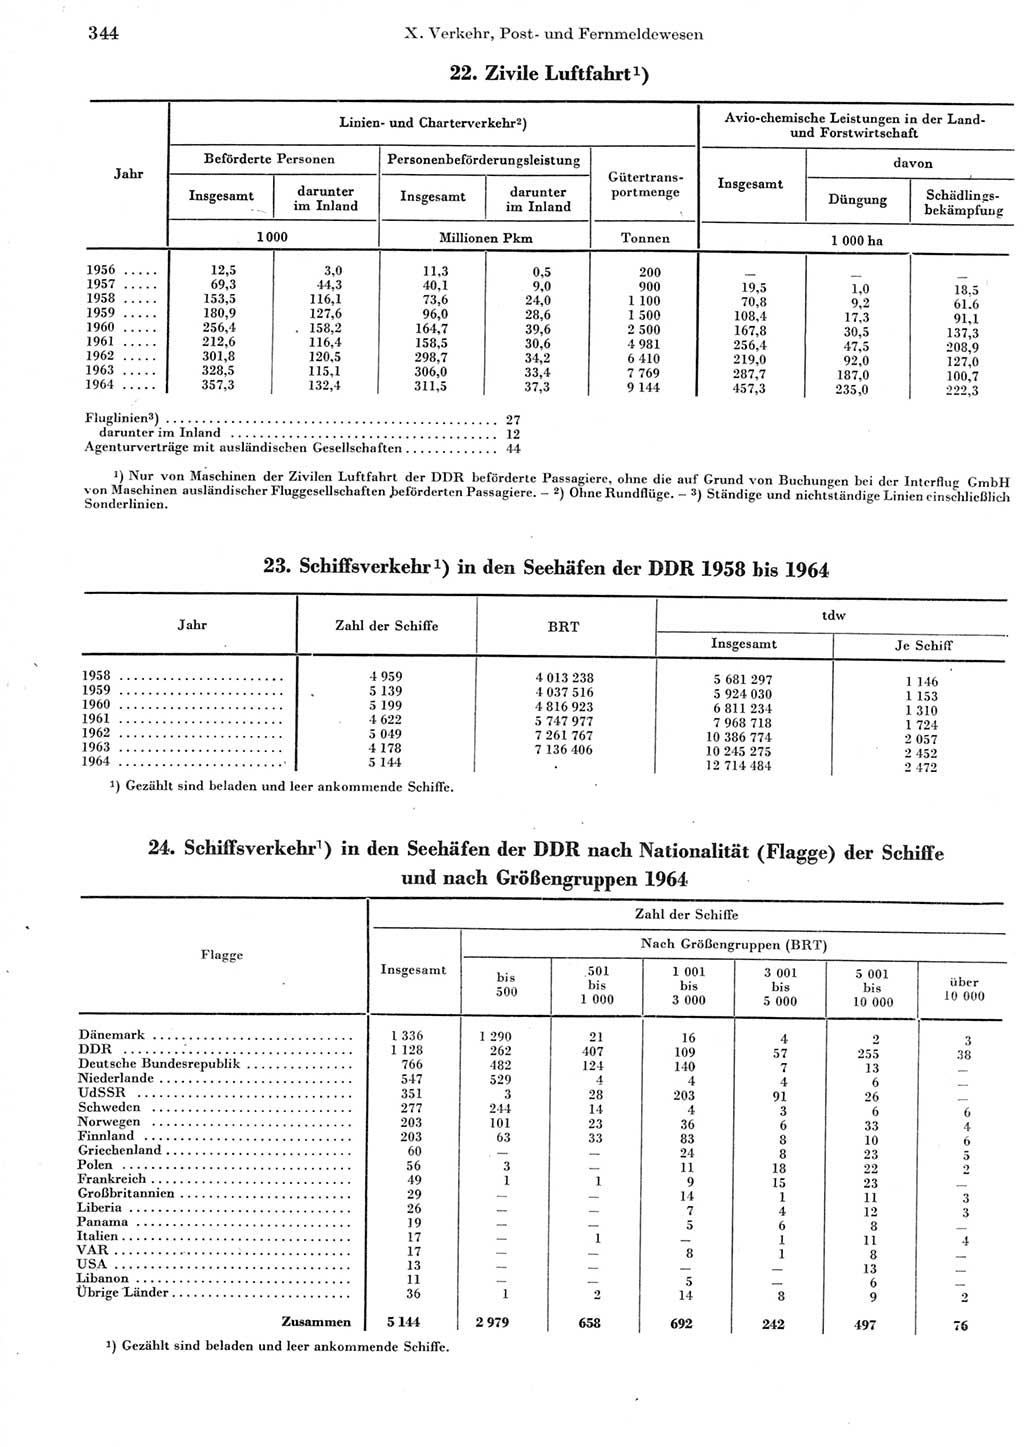 Statistisches Jahrbuch der Deutschen Demokratischen Republik (DDR) 1965, Seite 344 (Stat. Jb. DDR 1965, S. 344)